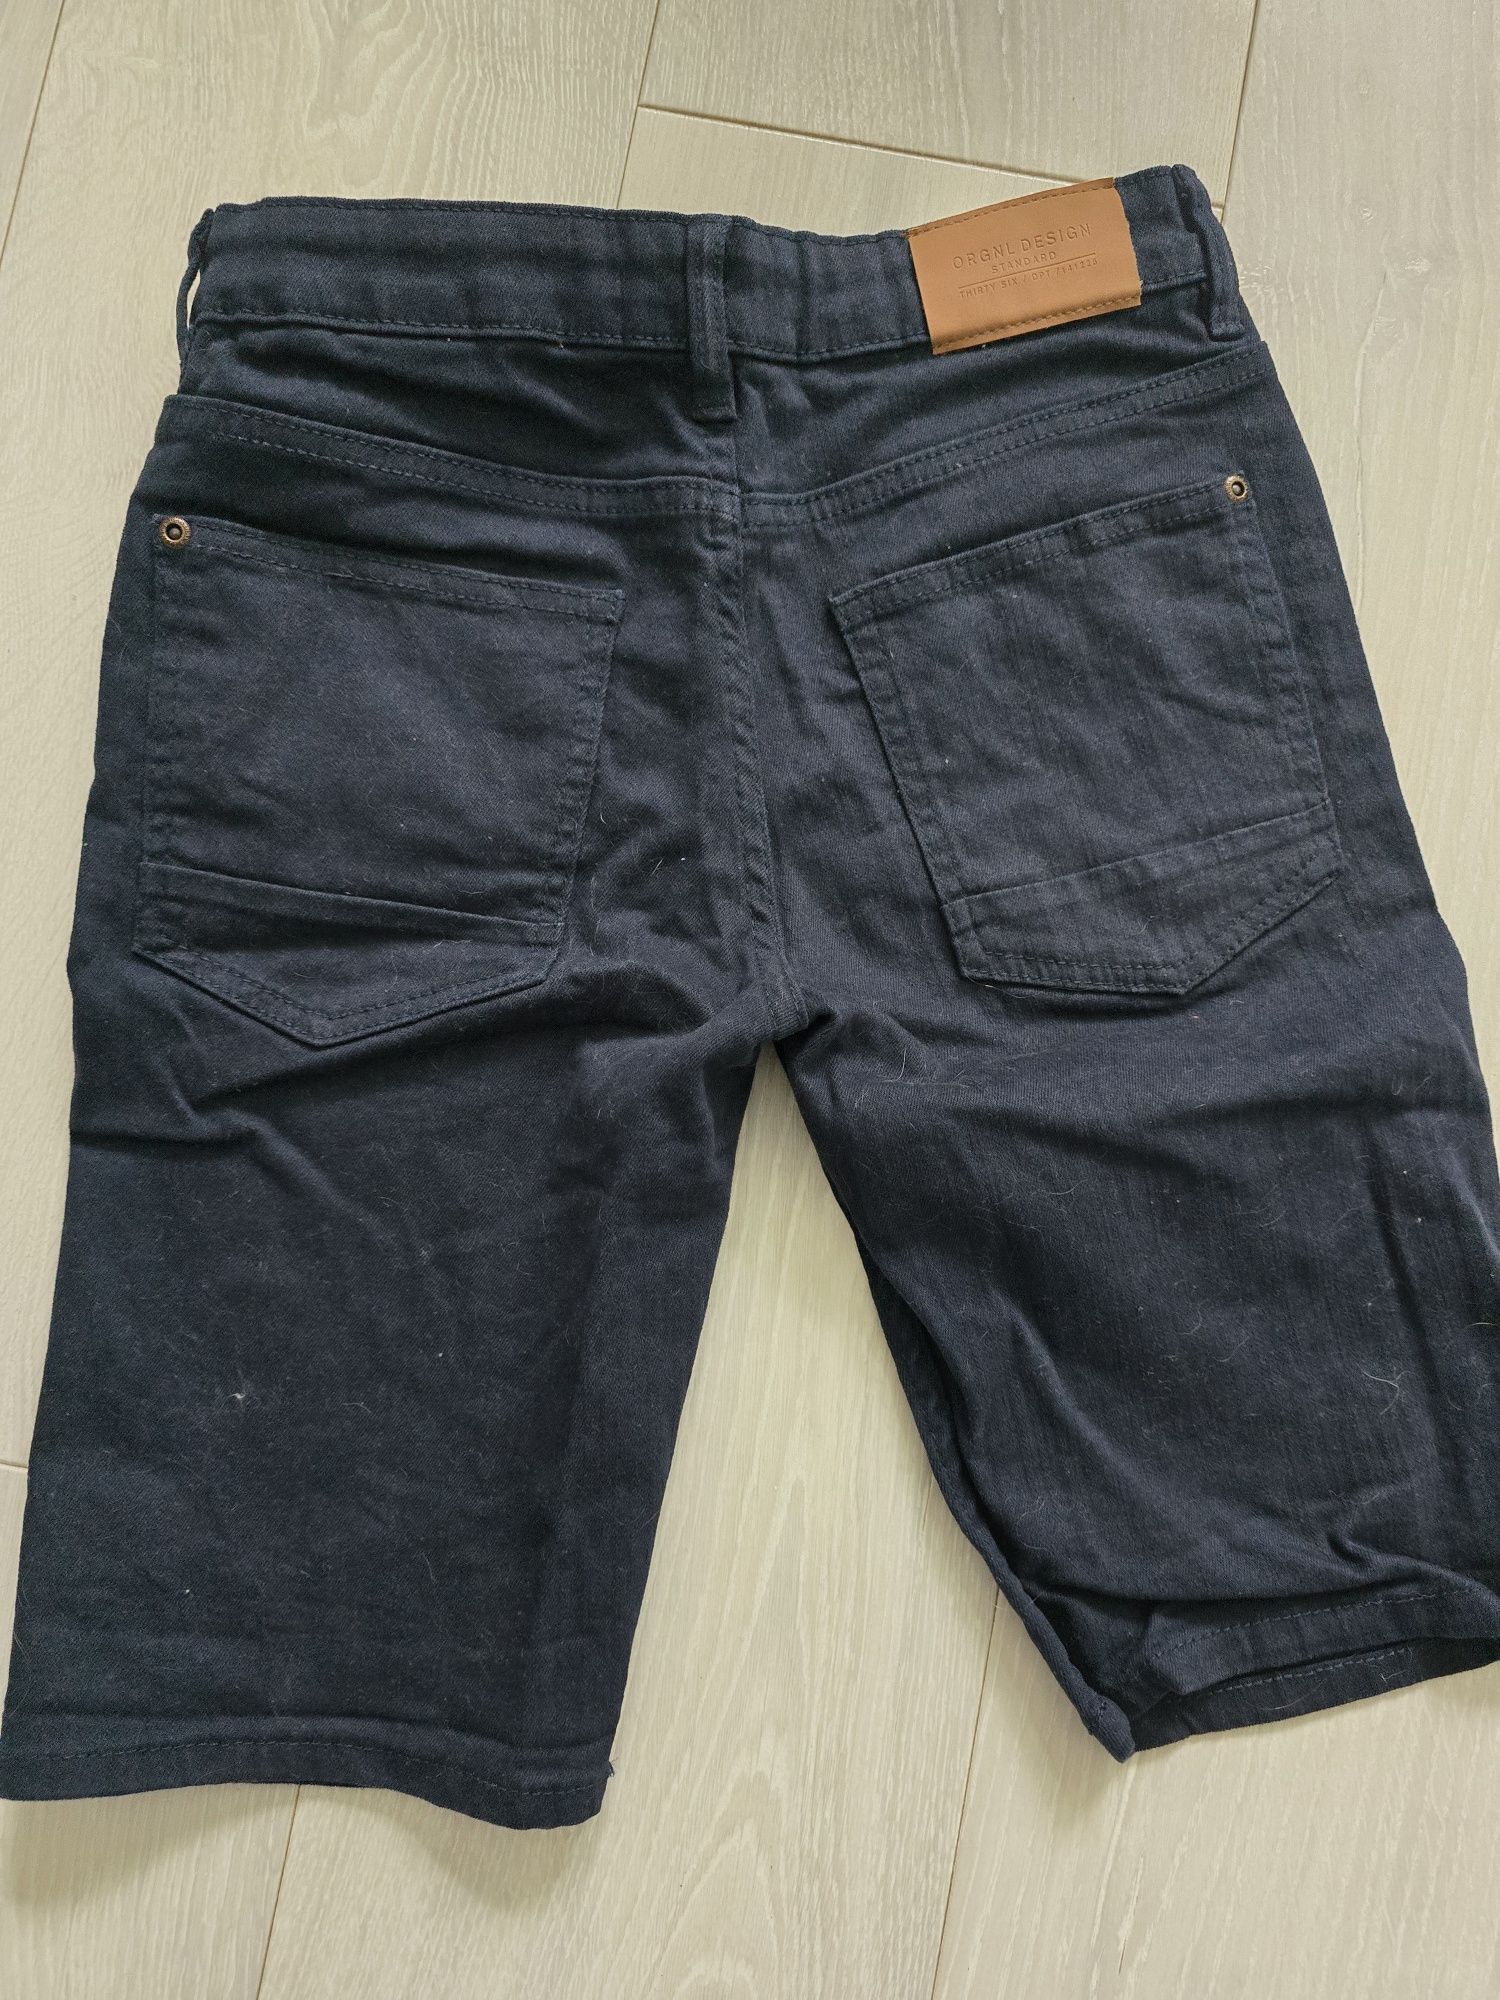 Spodenki jeans H&M r. 140